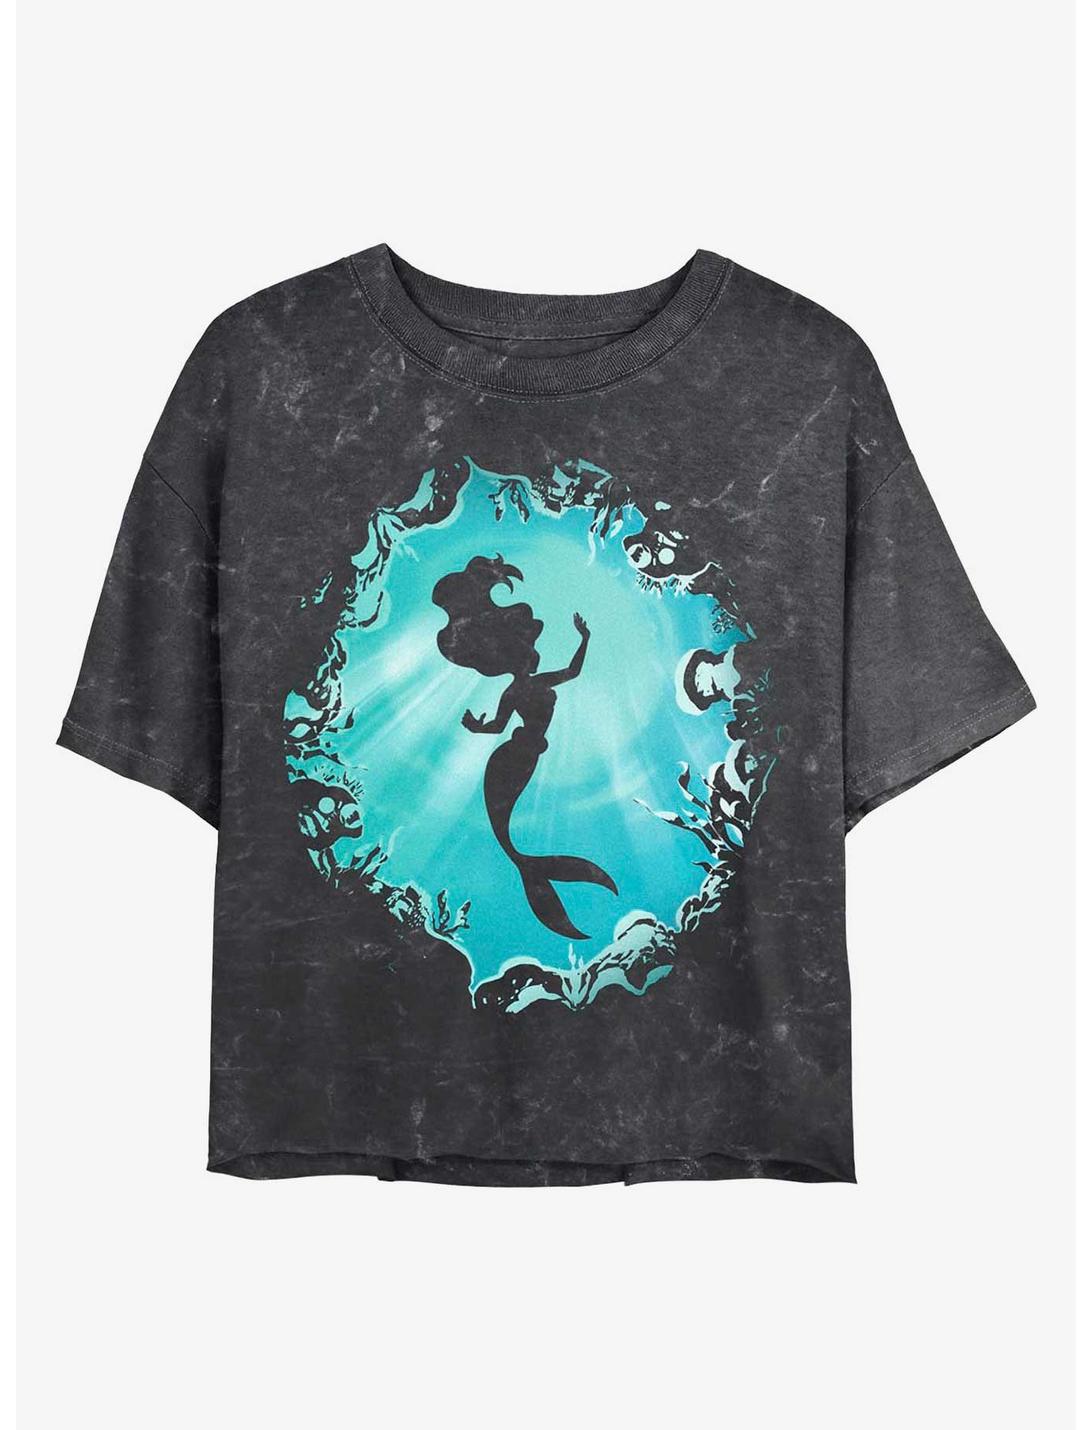 Disney Princesses Ariel's Grotto Mineral Wash Crop Girls T-Shirt, BLACK, hi-res